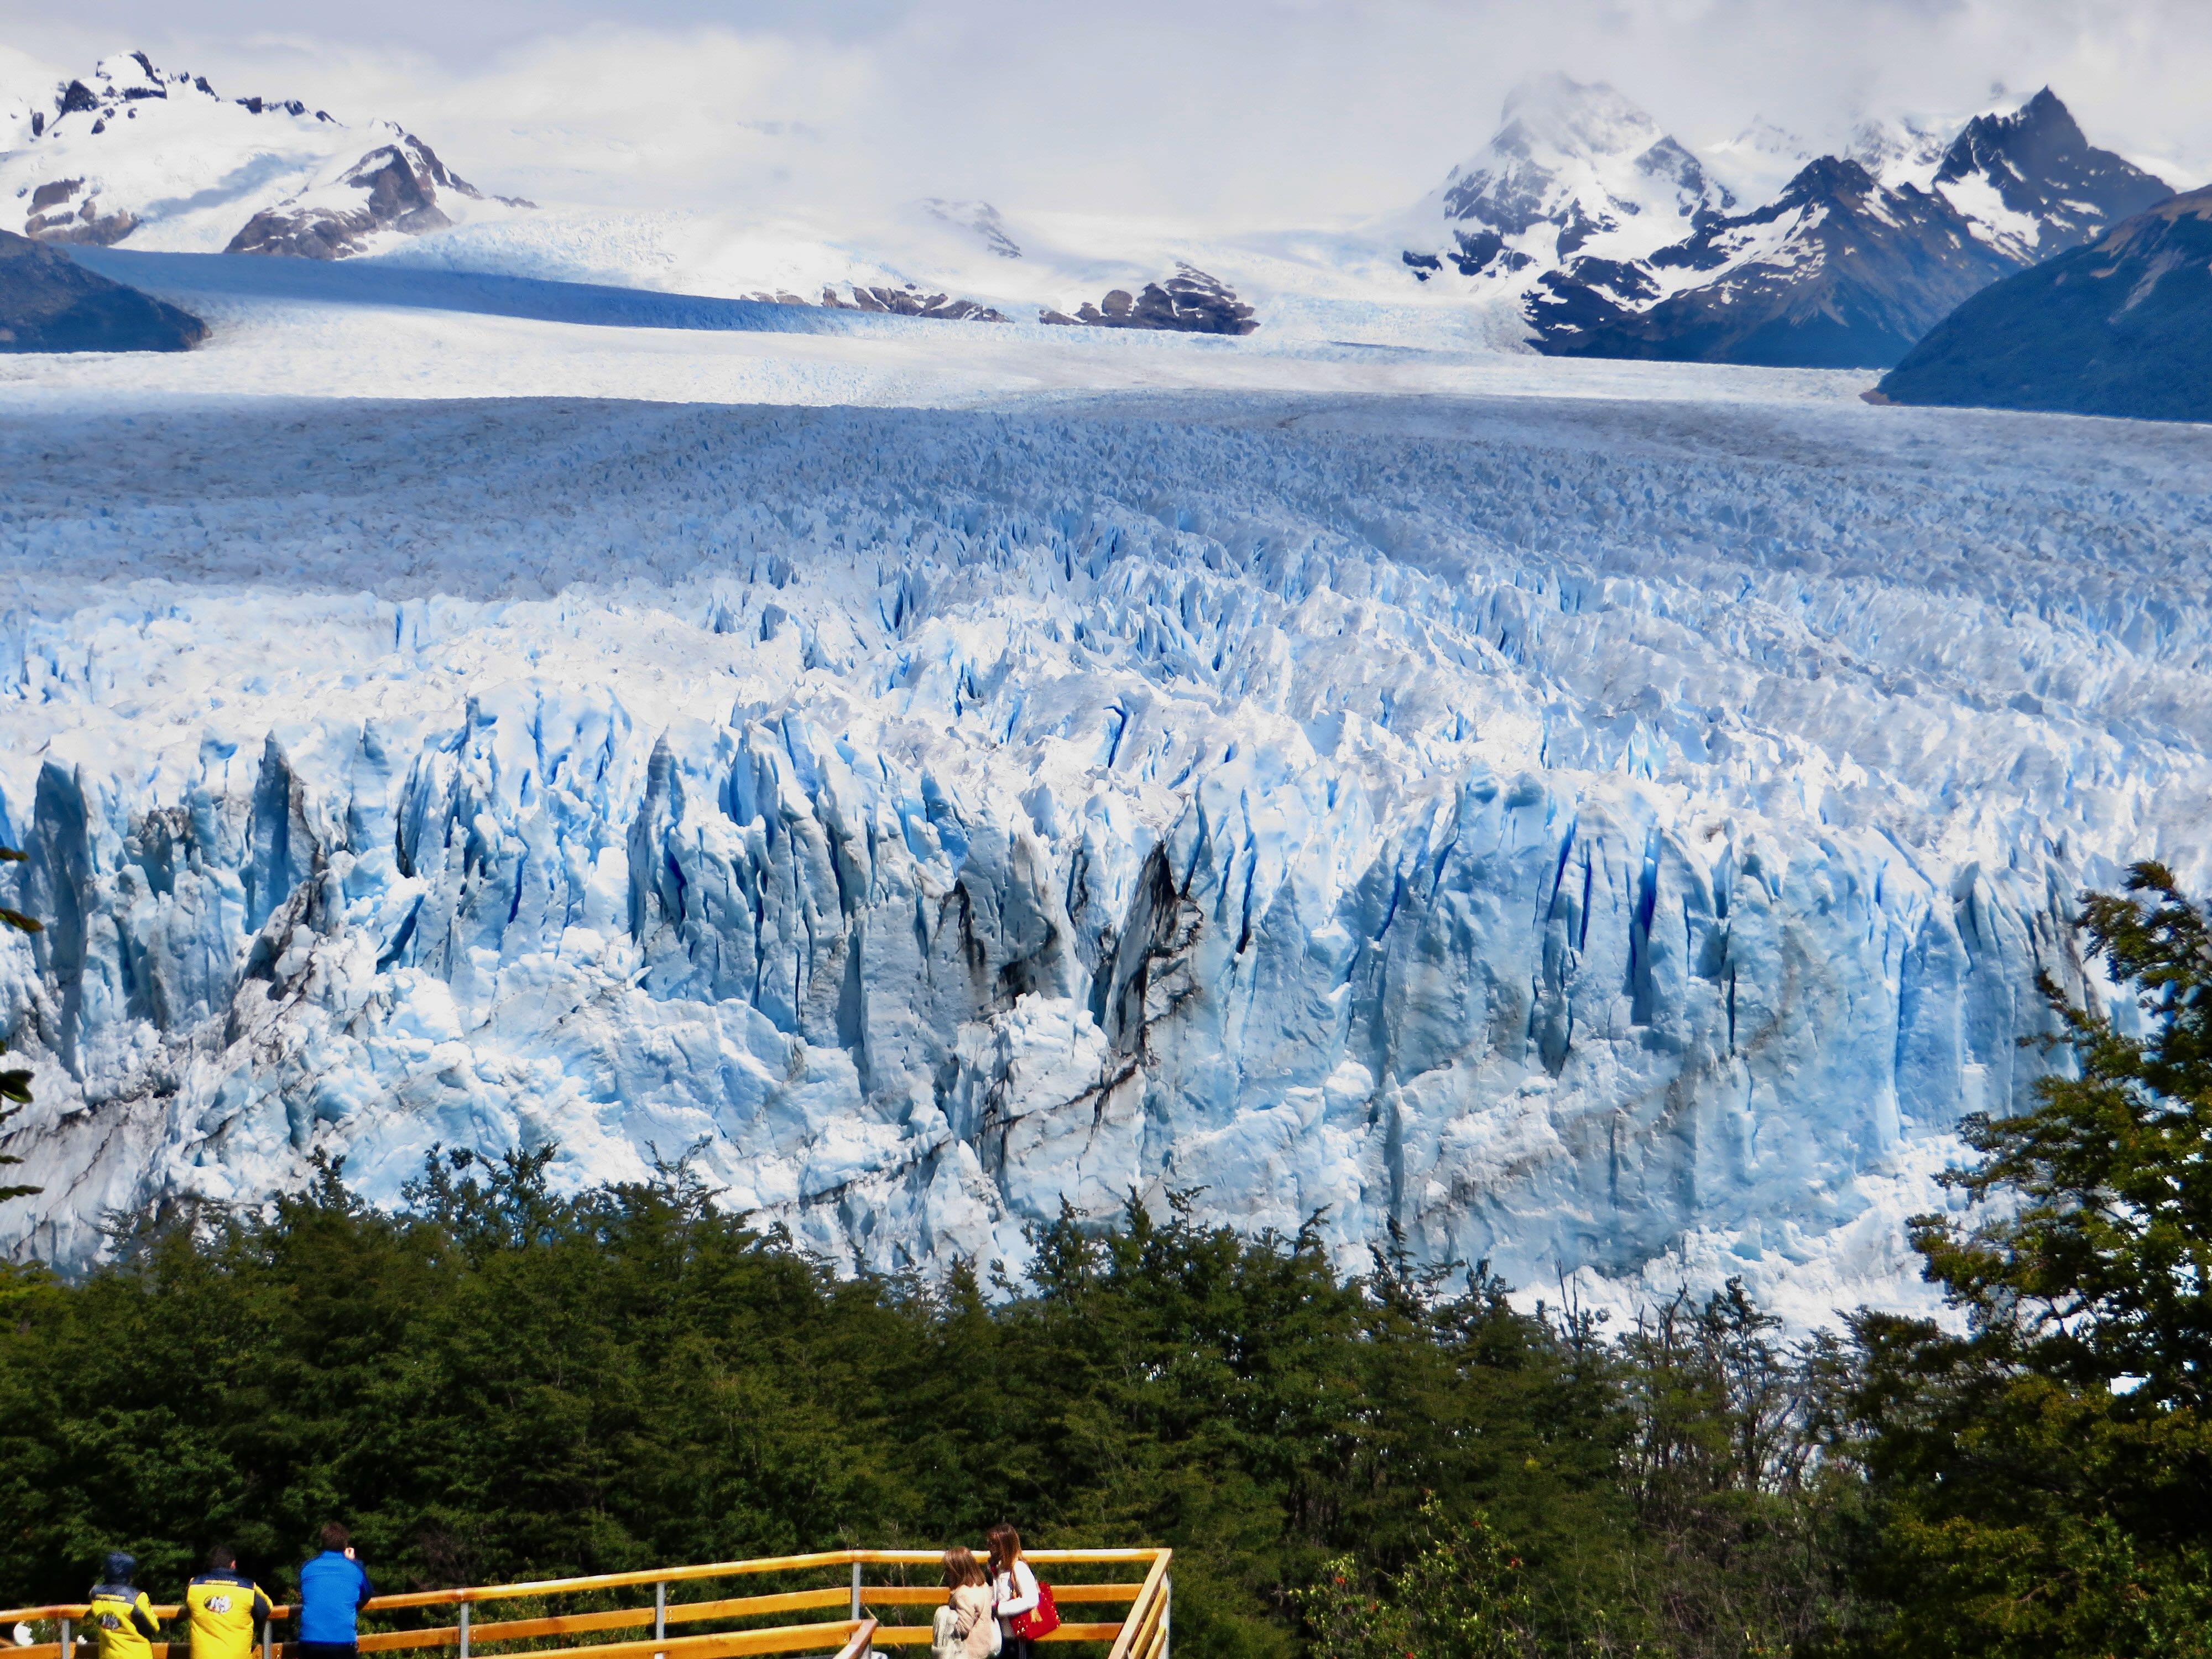 Perito Moreno Glacier Viewpoint, Perito Moreno Glacier Tour